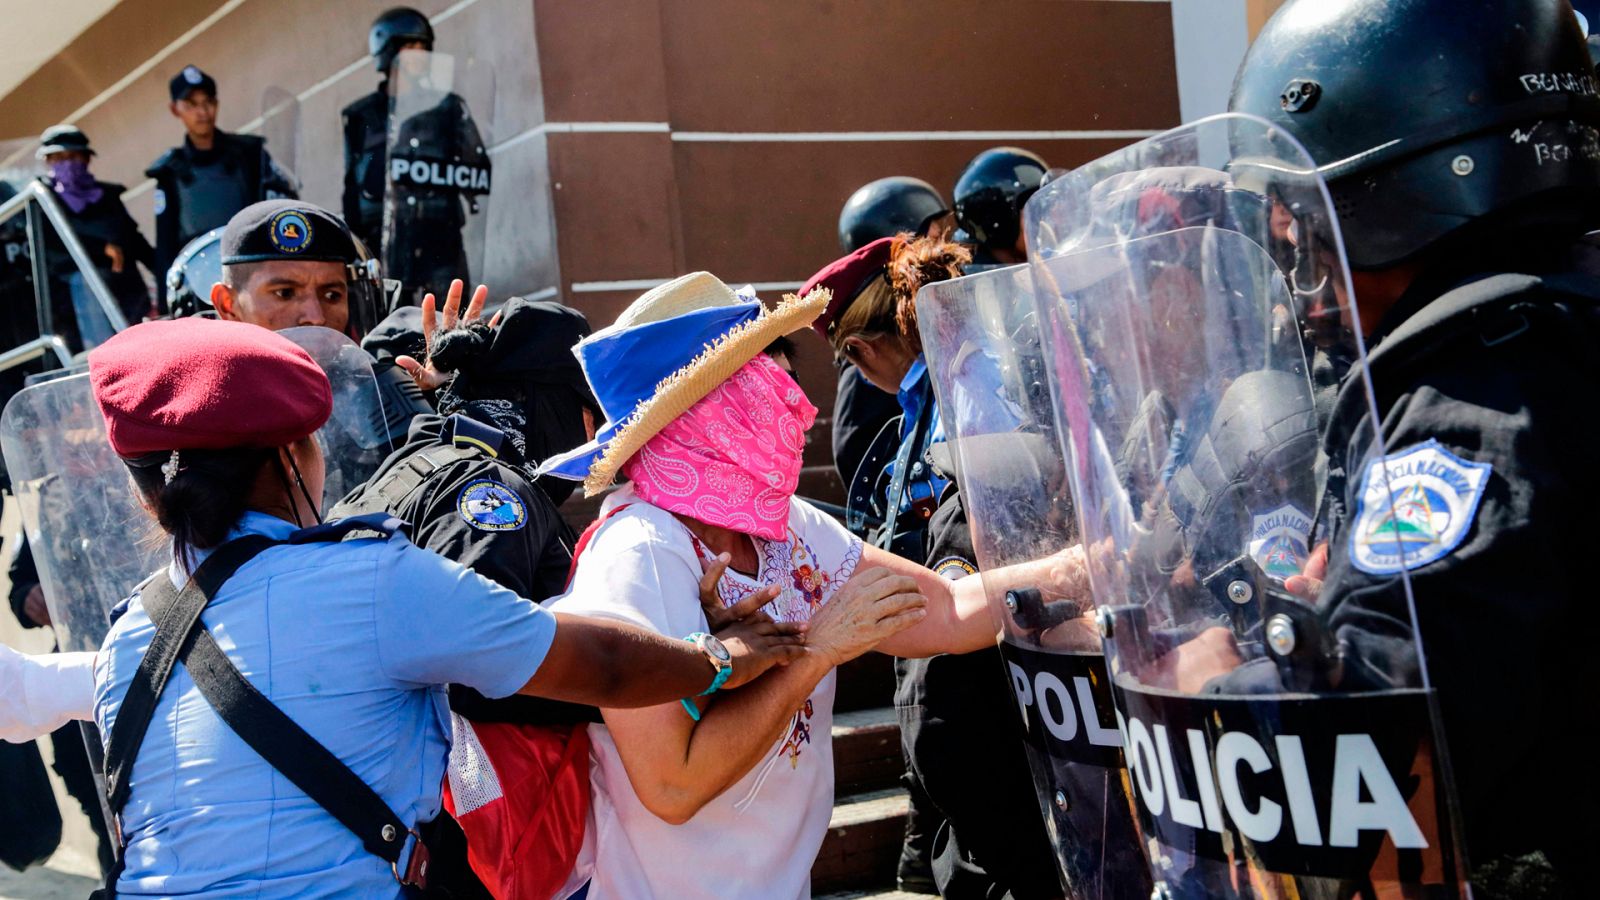 La situación en Nicaragua: protestas ilegales si no son de los seguidores de Ortega